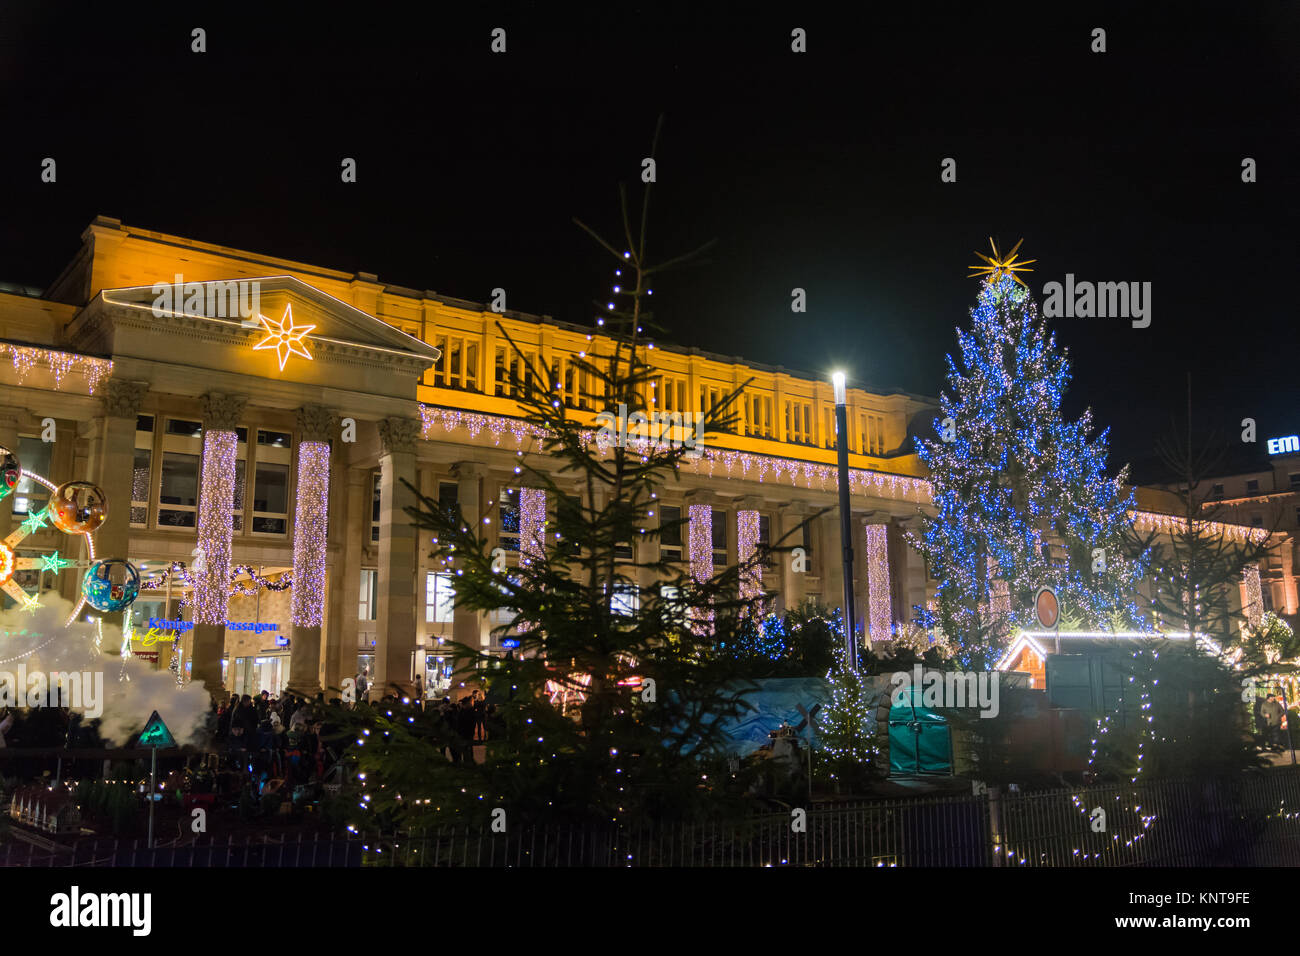 Stuttgart Weihnachtsmarkt Schlossplatz 2016 Mercado de Navidad de la ciudad de las luces de noche Foto de stock